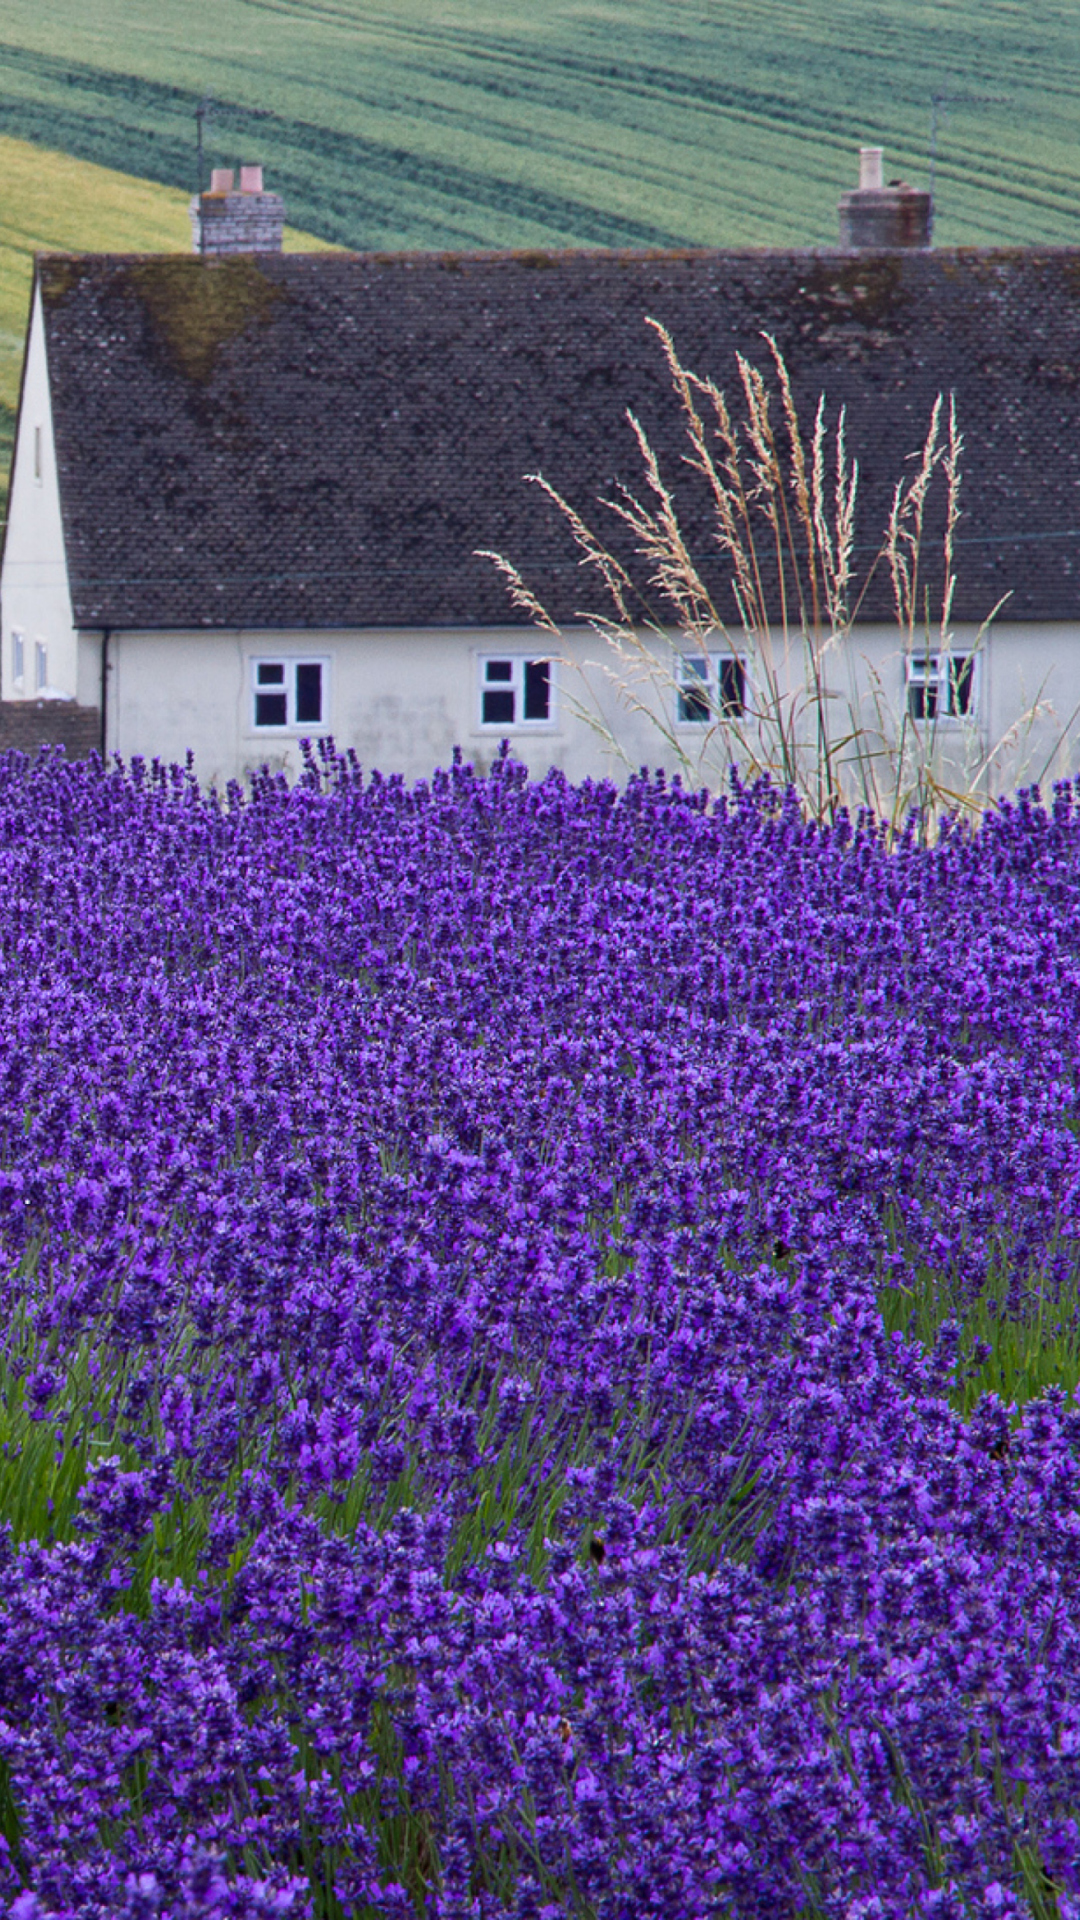 House In Lavender Field wallpaper 1080x1920